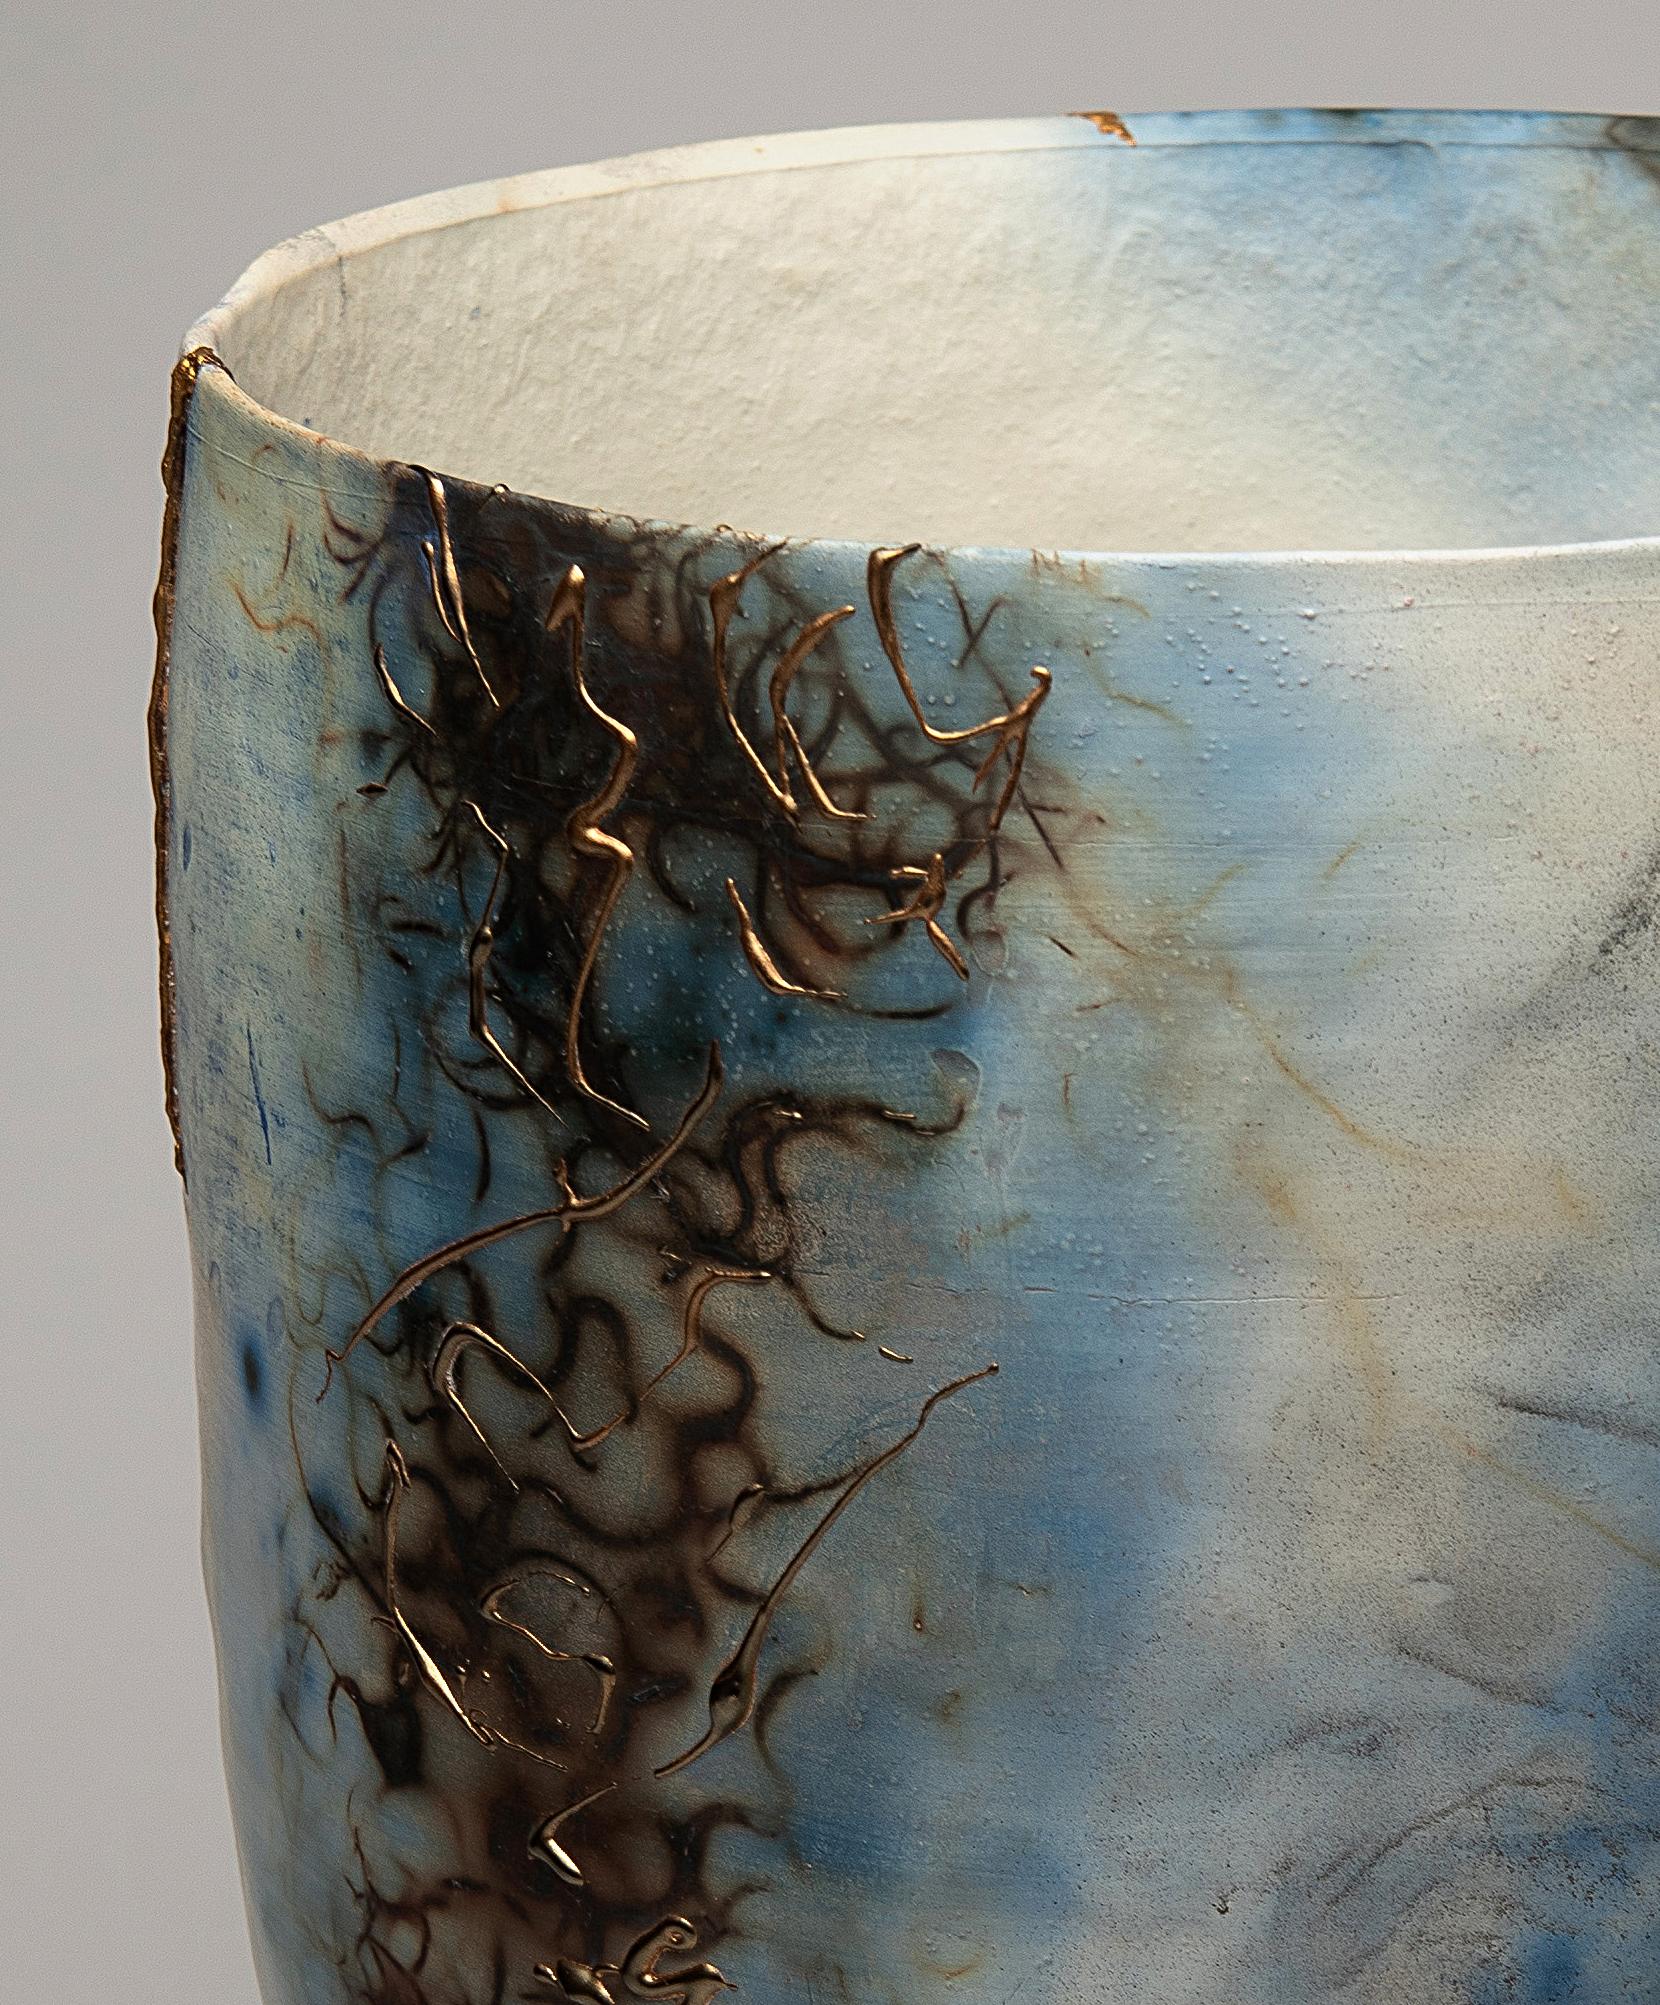 „Blue Lagoon“, Keramikskulptur, Porzellanvase, Saggar, Blau, Kupfer, Gold (Zeitgenössisch), Mixed Media Art, von Alison Brannen